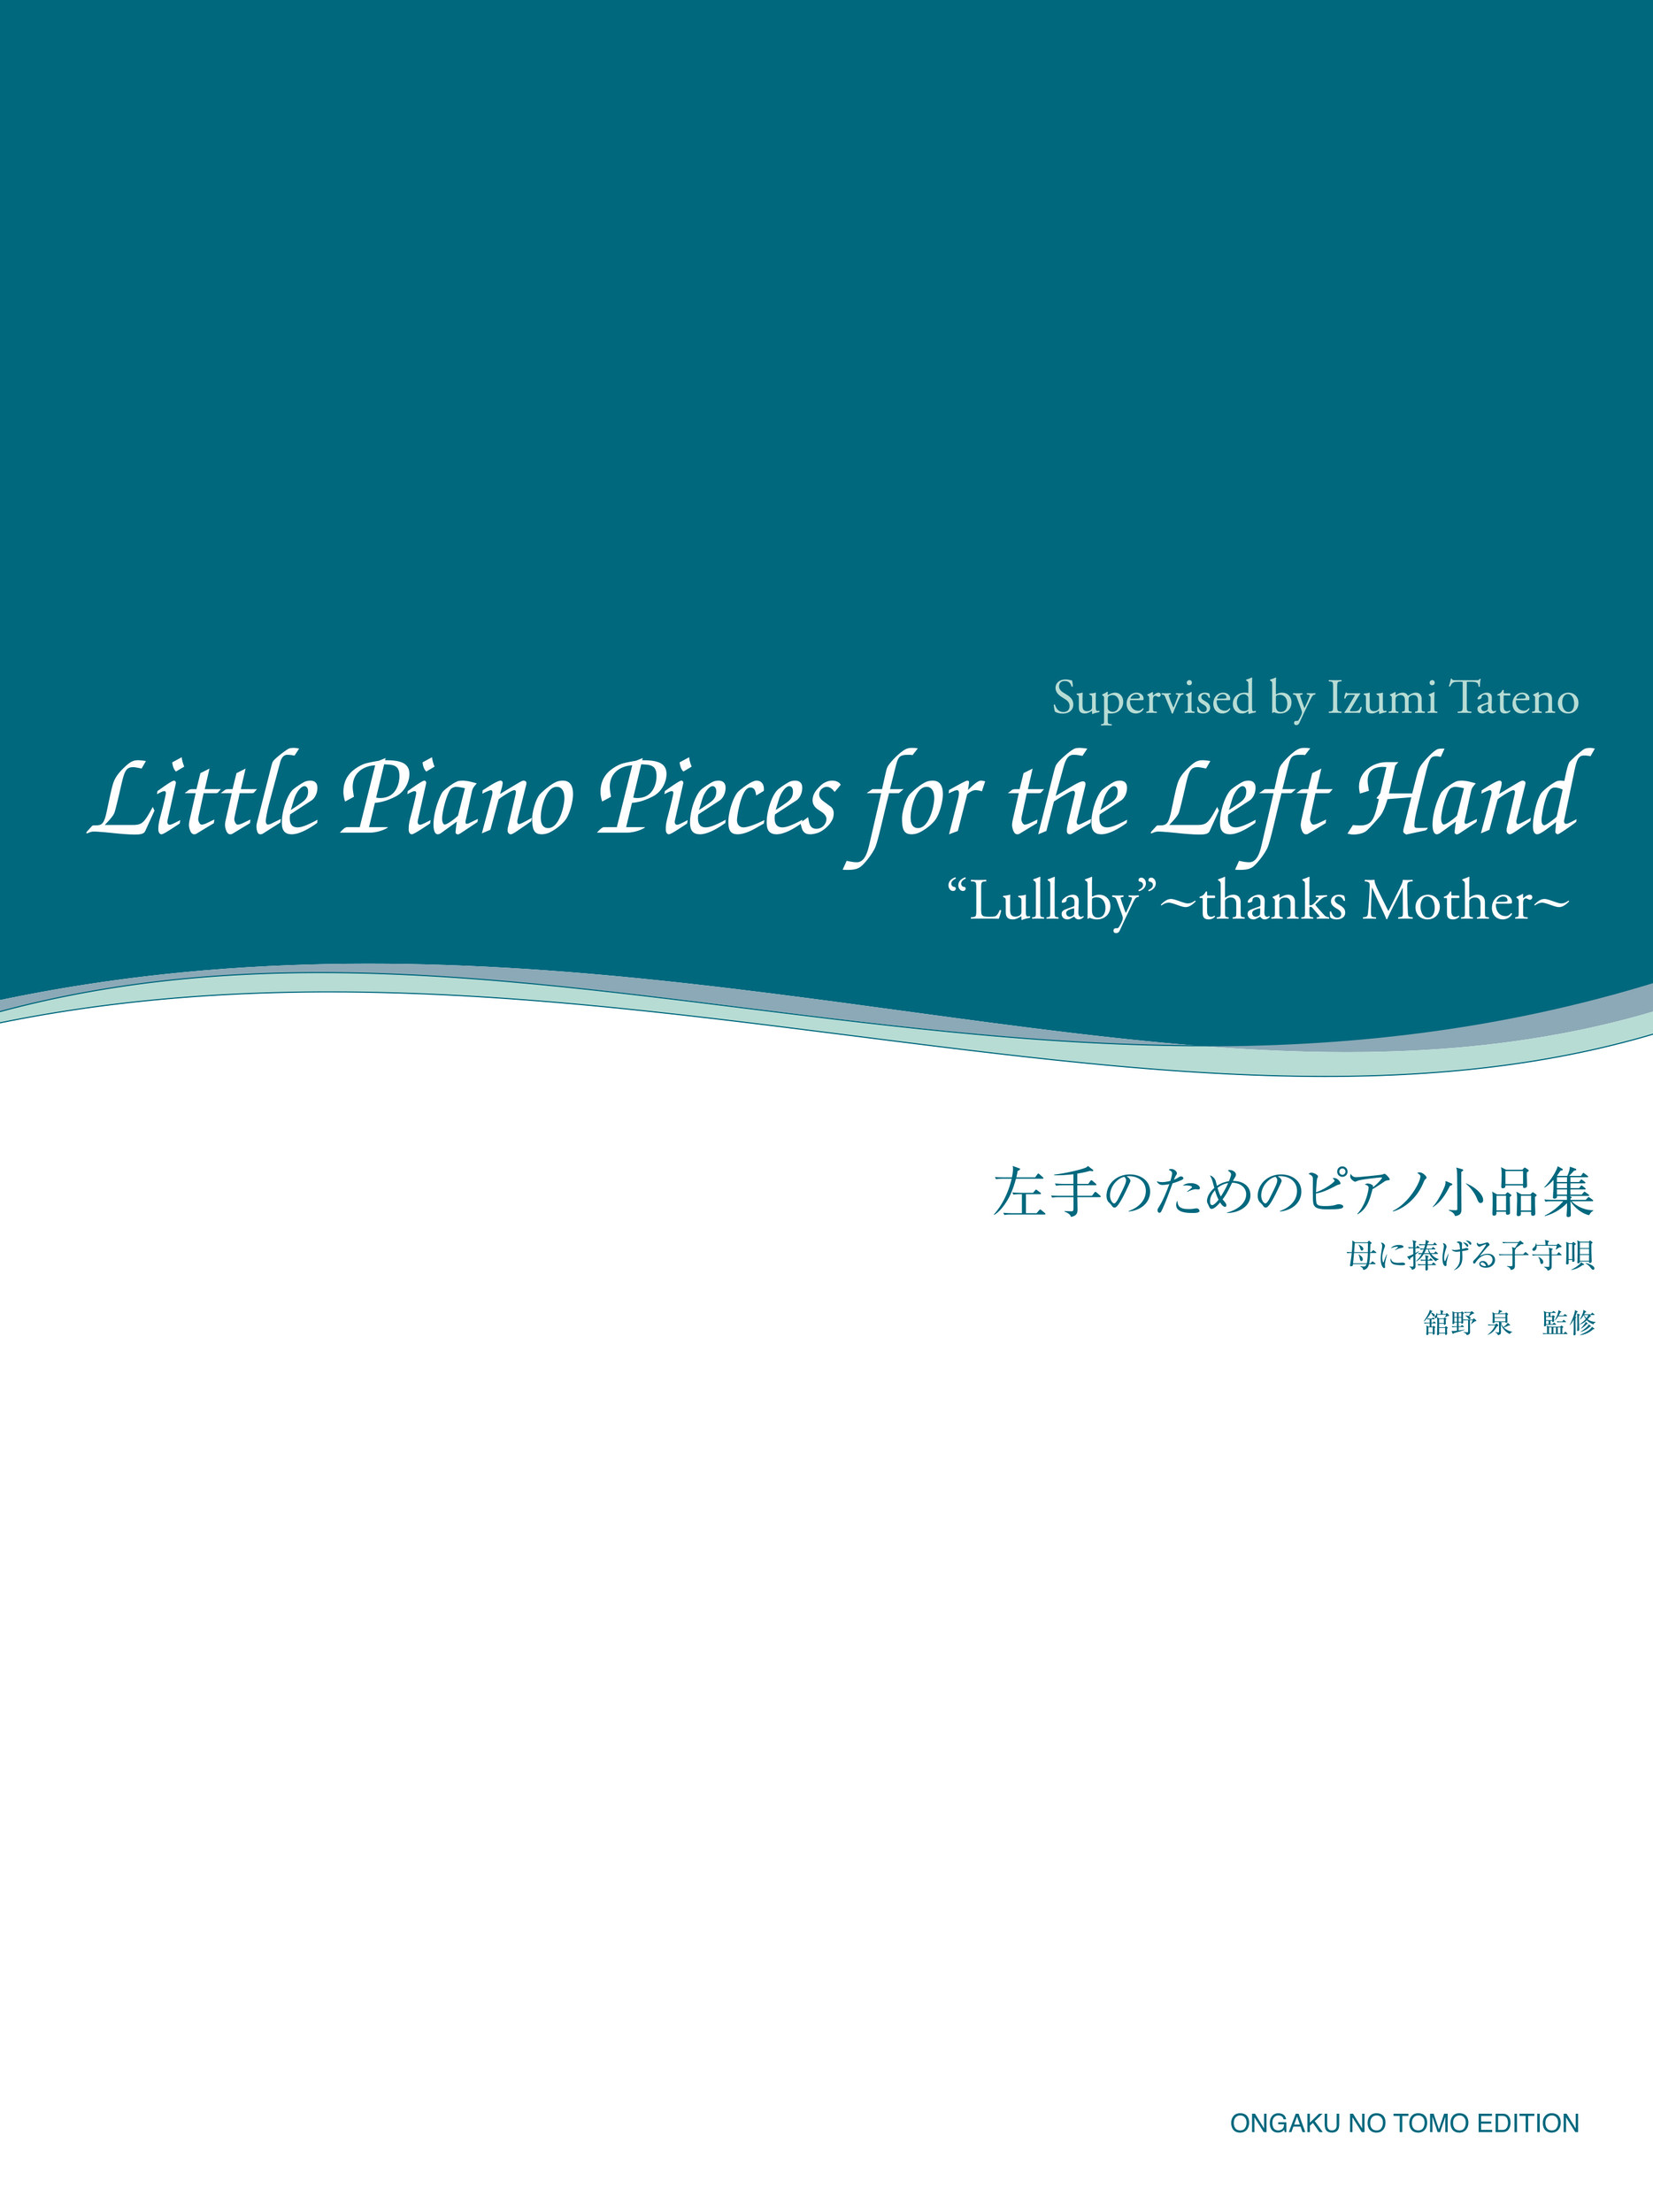 左手のためのピアノ小品集の商品画像